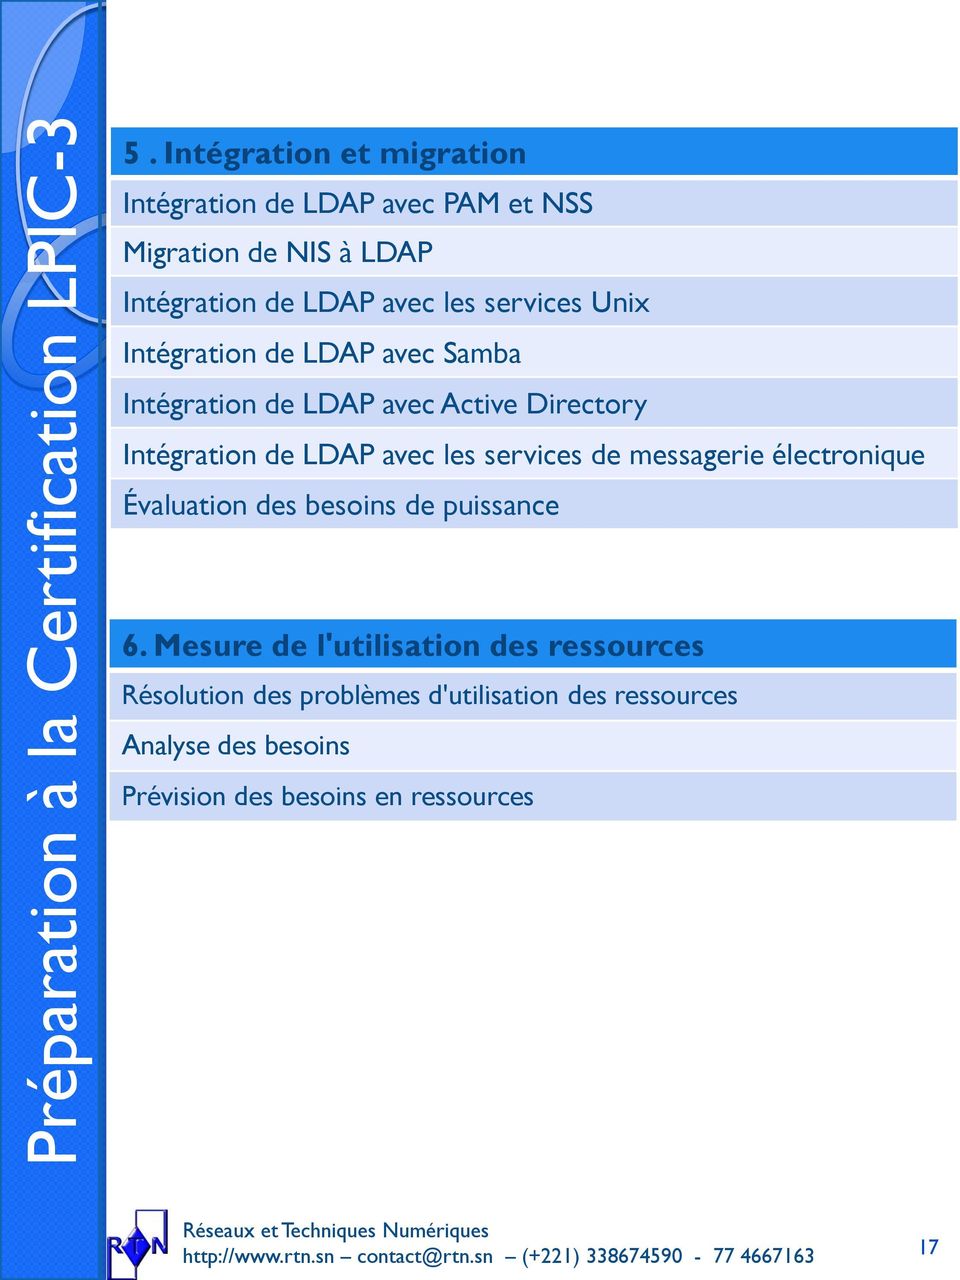 Unix Intégration de LDAP avec Samba Intégration de LDAP avec Active Directory Intégration de LDAP avec les services de